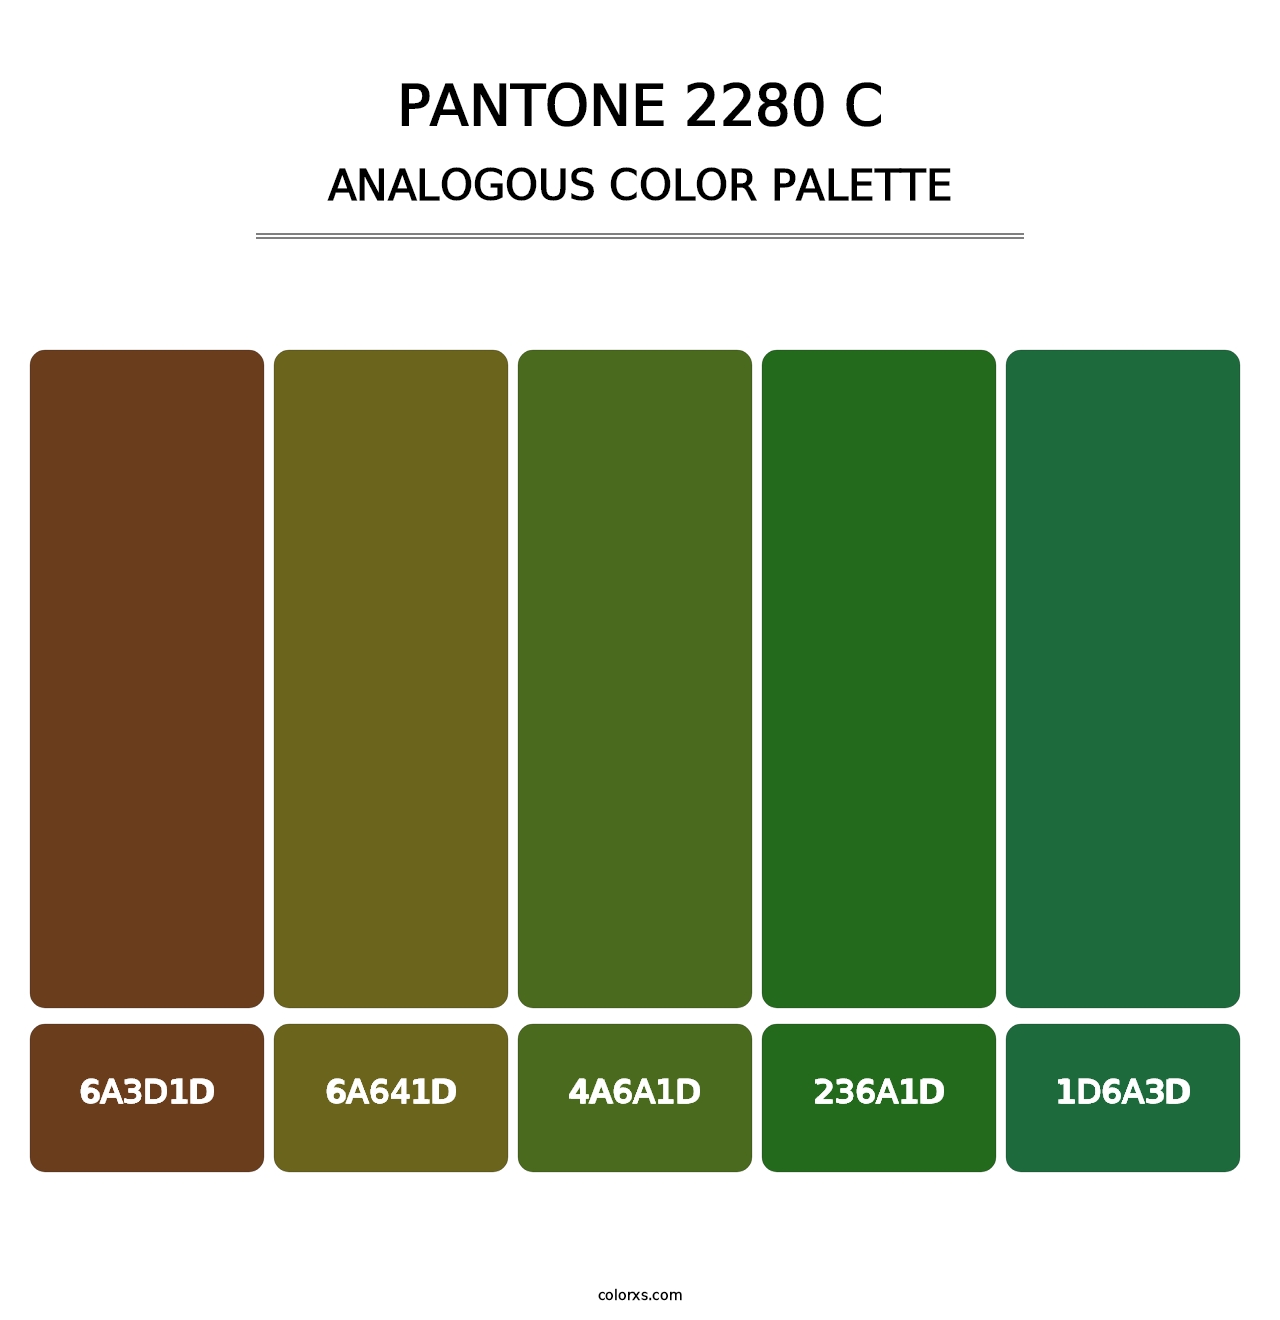 PANTONE 2280 C - Analogous Color Palette